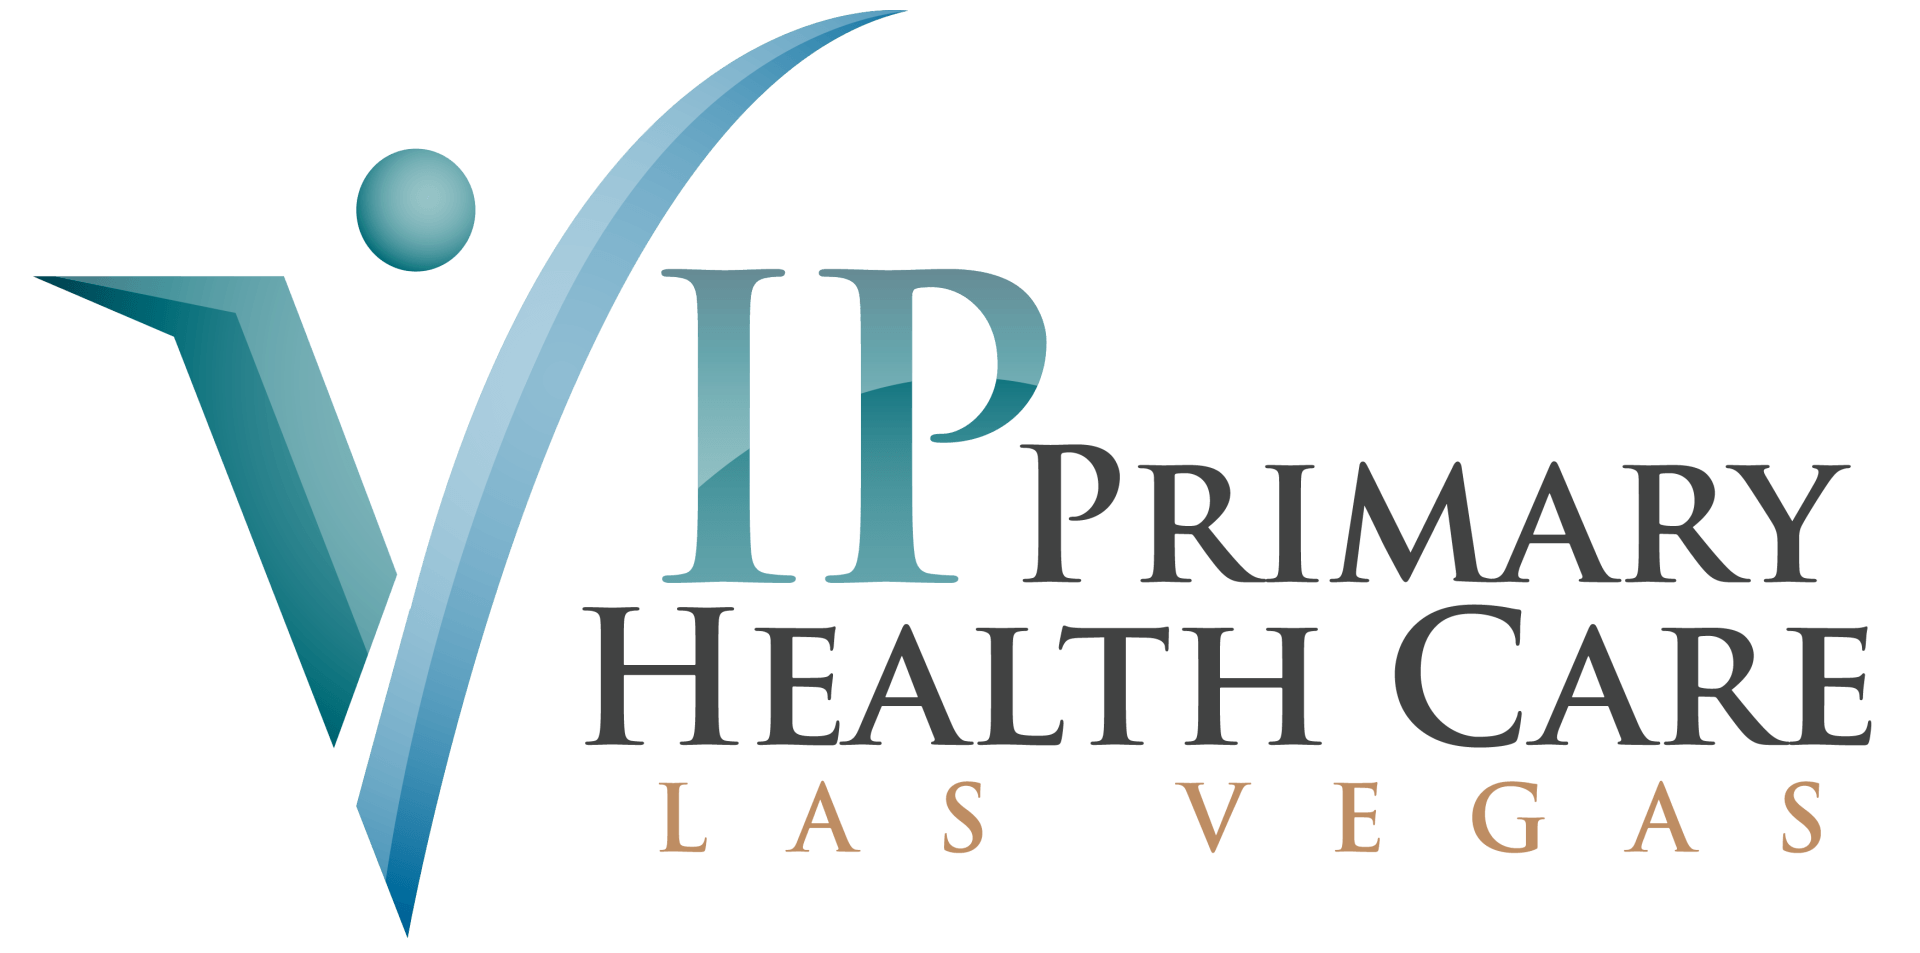 VIP Premium Health Care Las Vegas logo